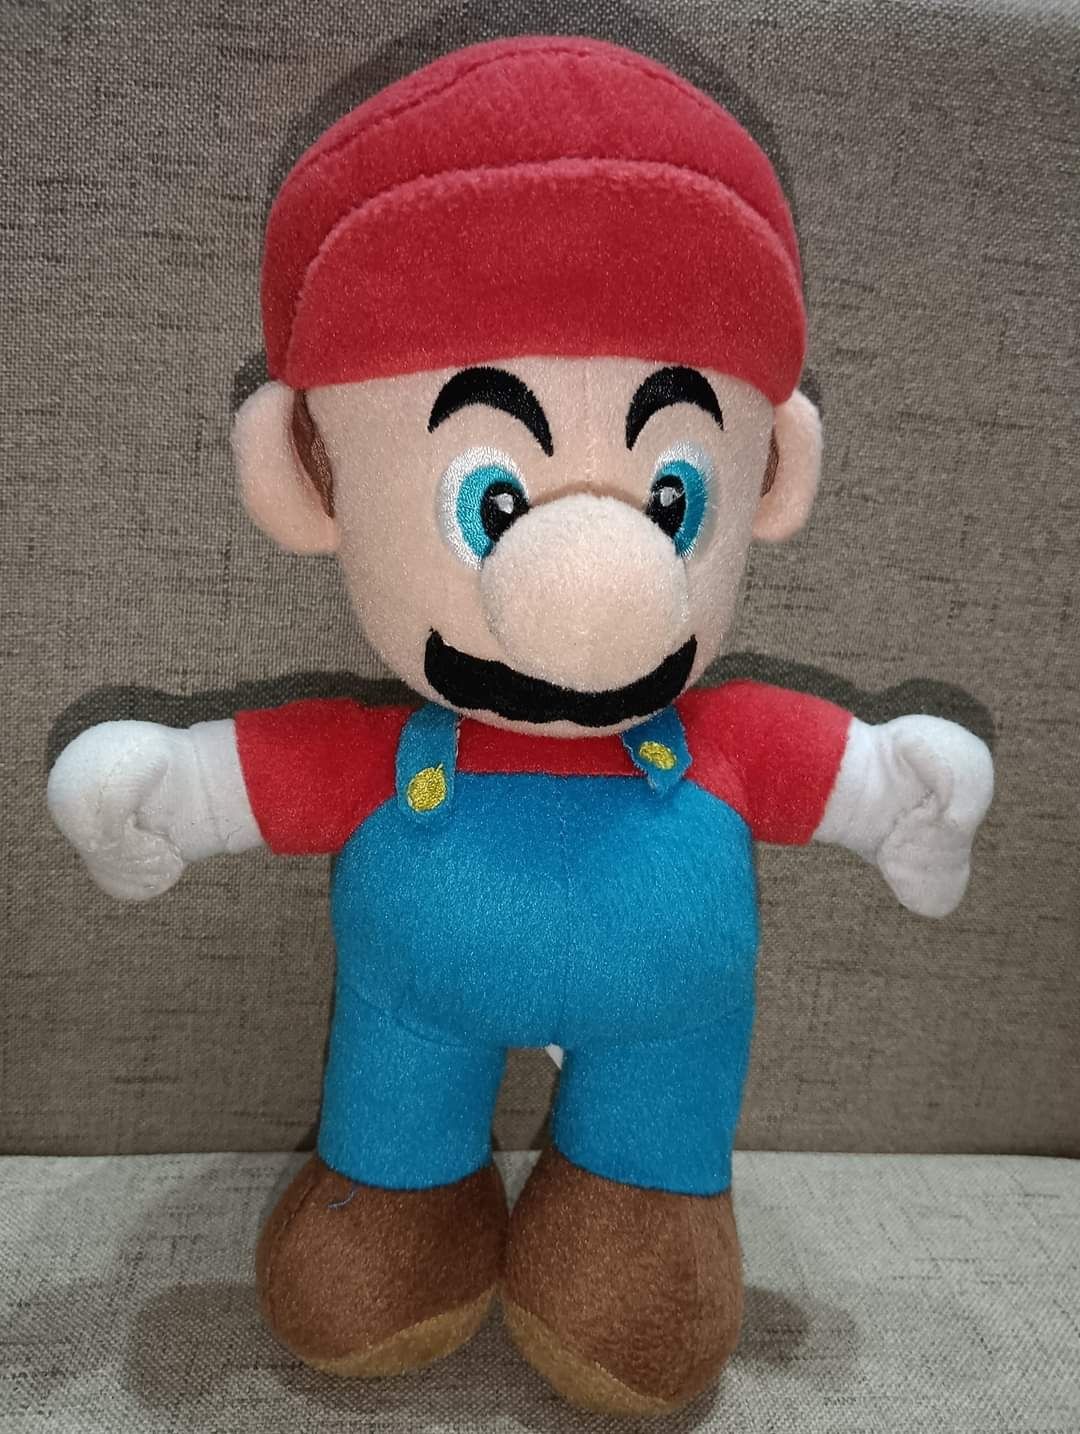 Plus Super Mario